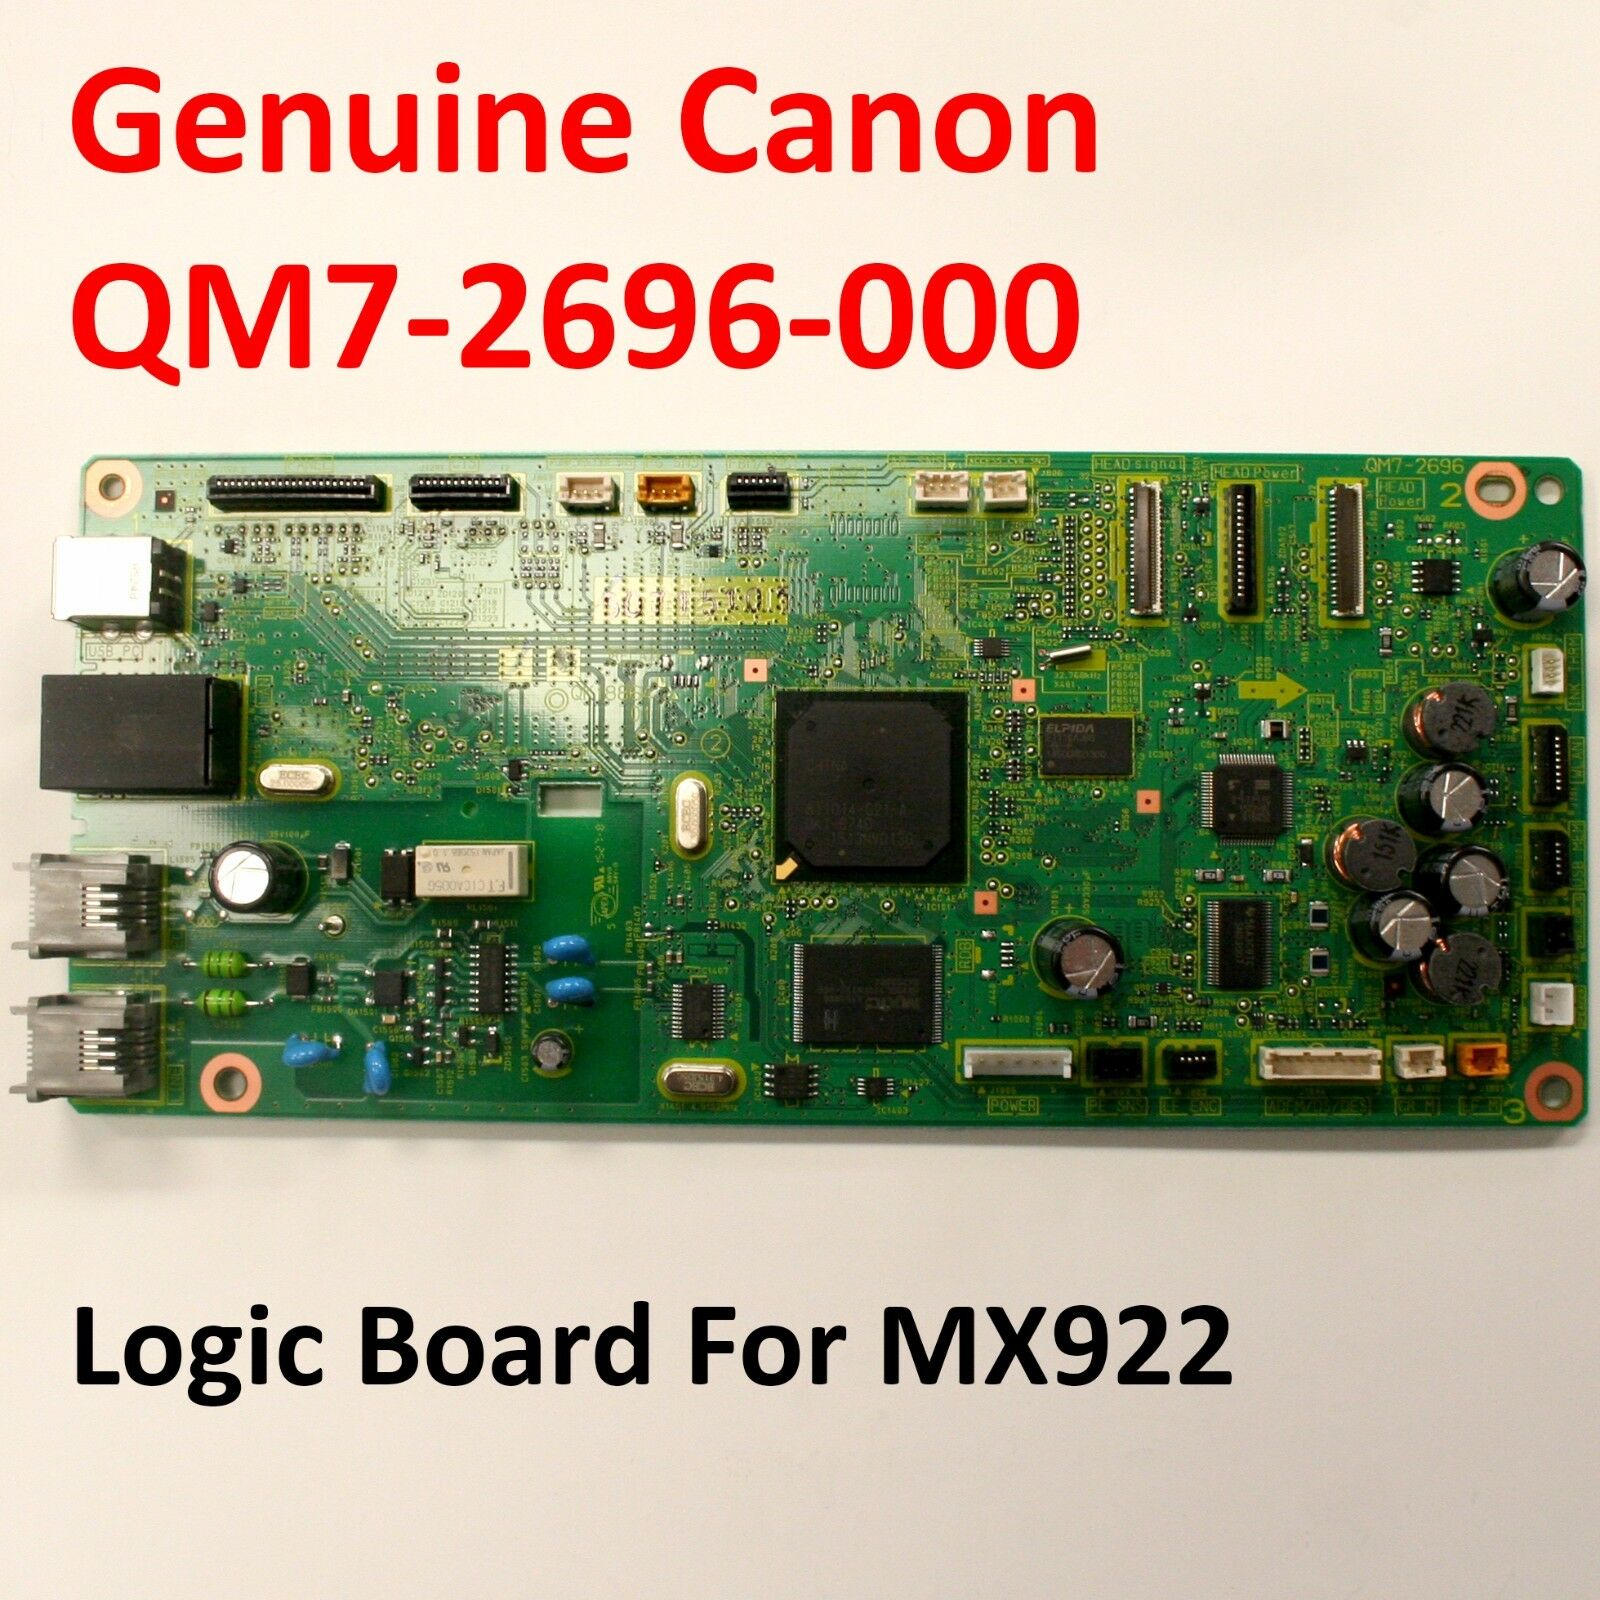 Canon Formatter Circuit Main Logic Board Qm7-2696-000 For Pixma Mx922 (qk1-8864)